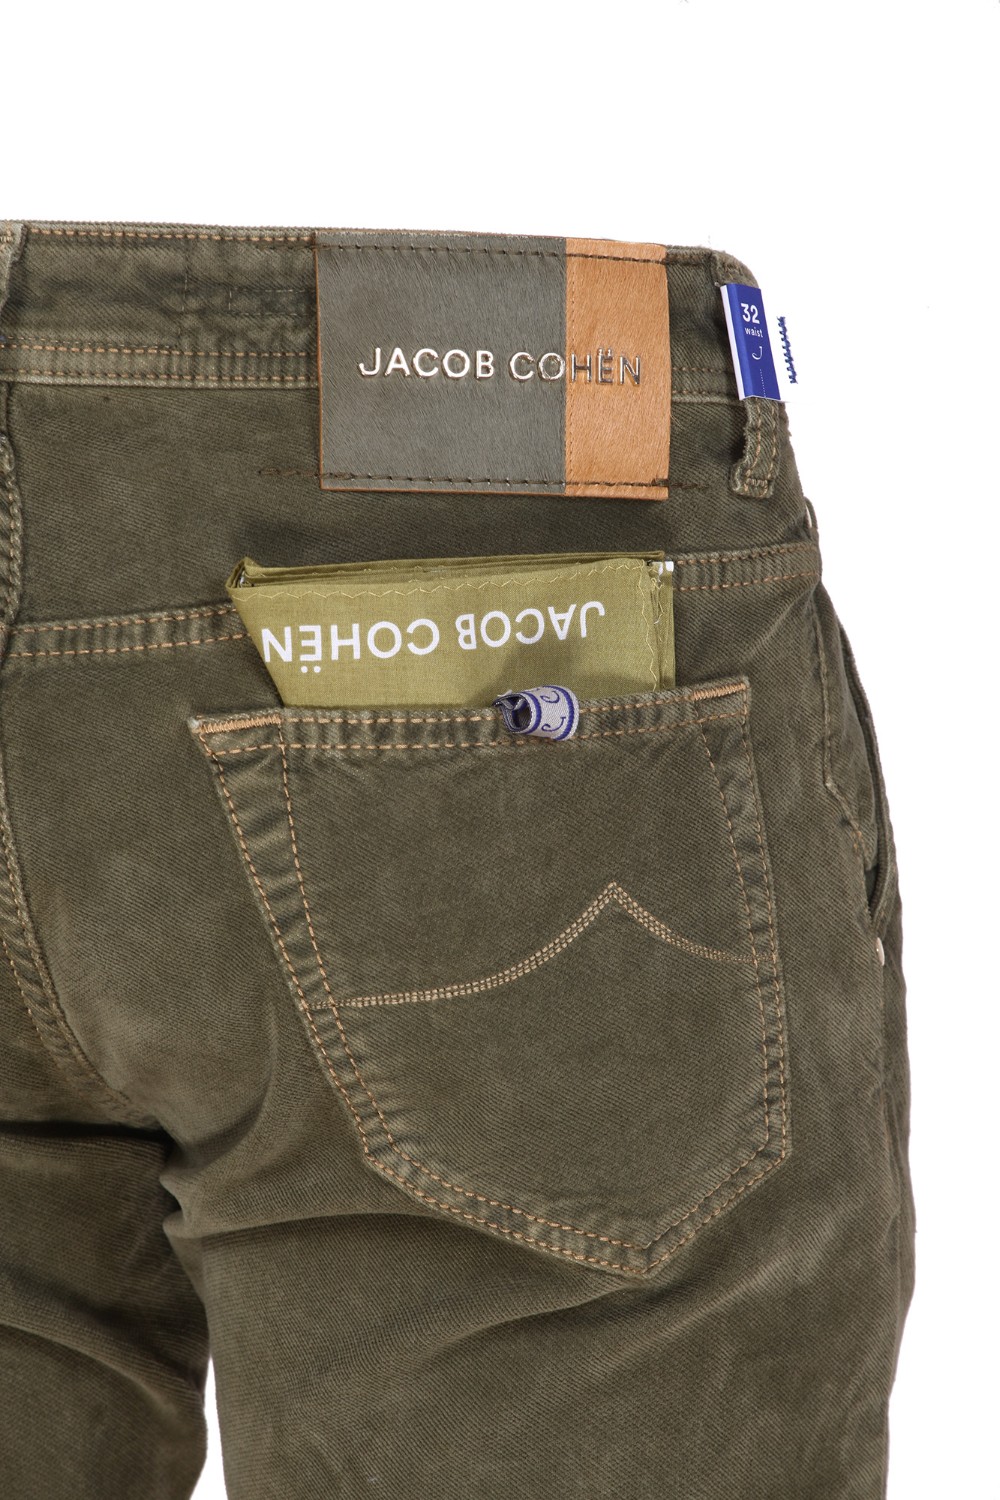 shop JACOB COHEN Sales Jeans: Jacob Cohen jeans elasticizzato, modello Leonard.
Tasche all' americana.
Tasche posteriori con ricamo e fazzoletto.
Chiusura con bottoni.
Patch in cavallino.
Composizione: 98% Cotone 2% Elastan.
Fabbricato in Italia.. LEONARD S3642-R42 number 4163390